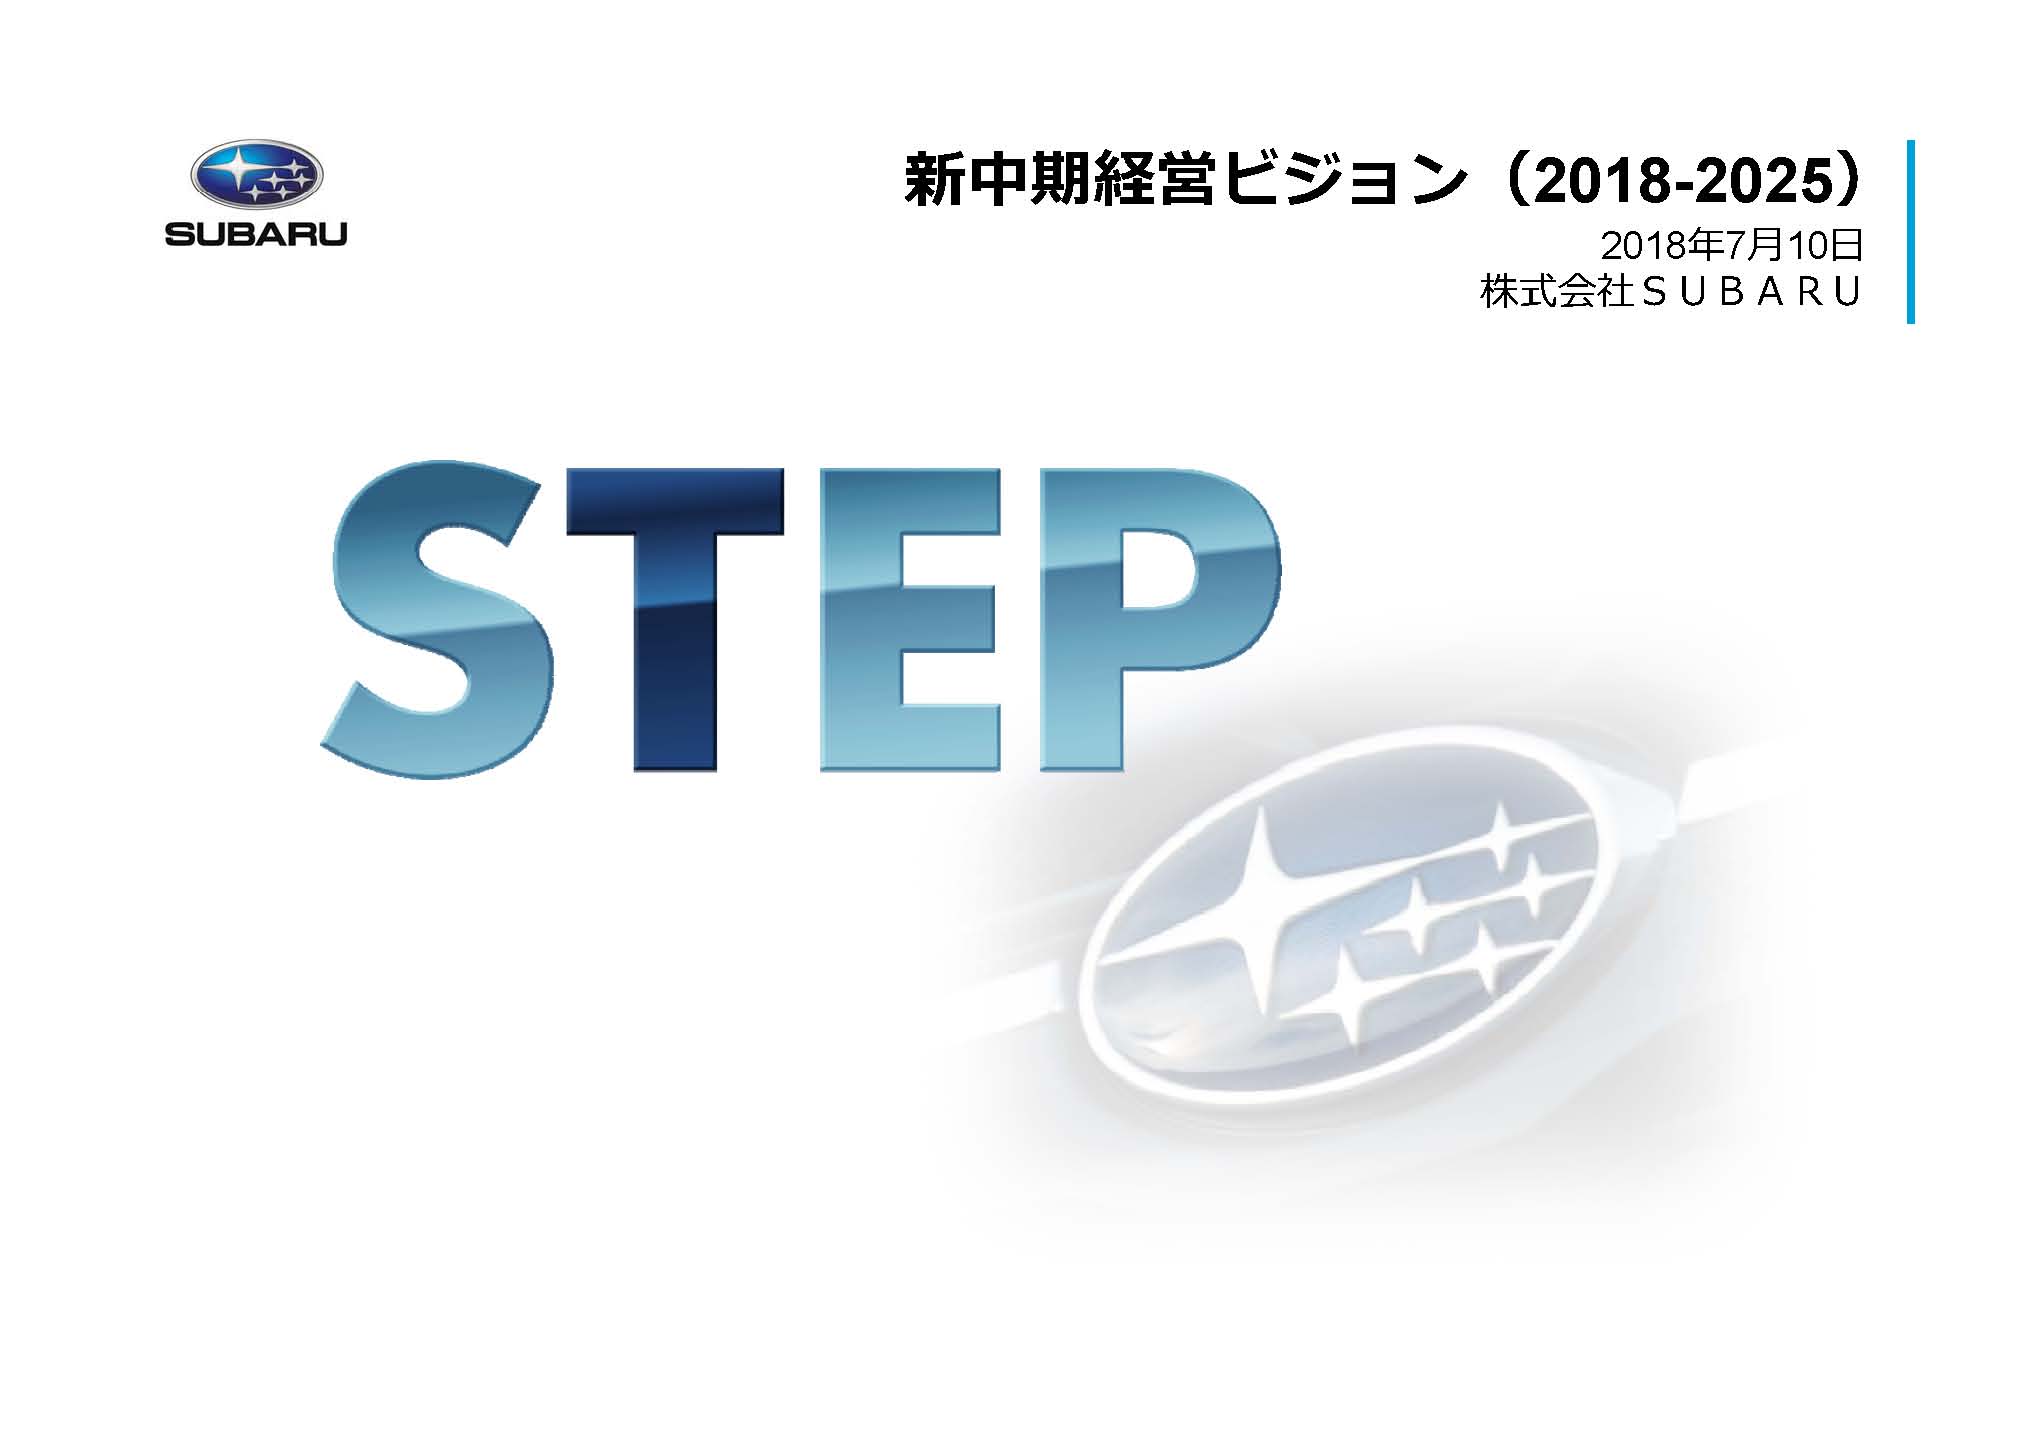 新中期経営ビジョン「STEP」発表